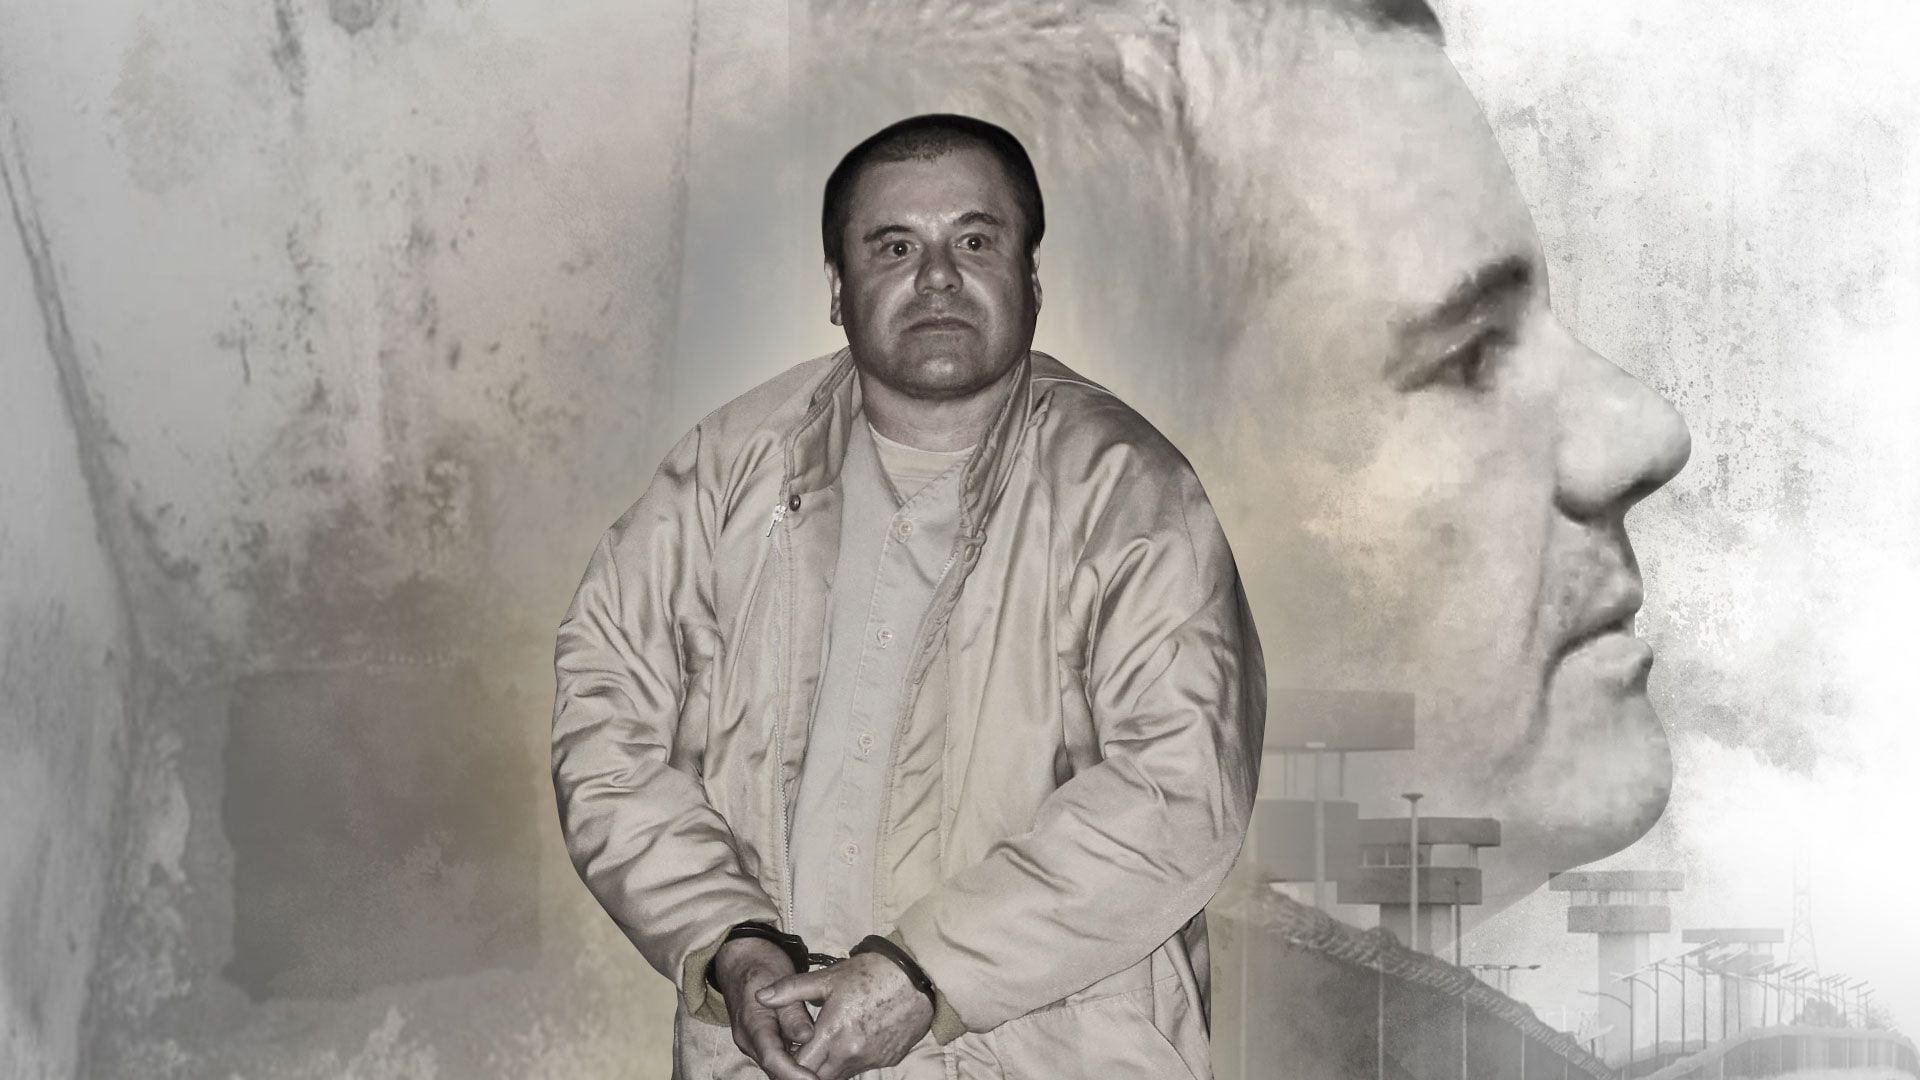 Quién es Max Aragón y cuál es su relación con “El Chapo” en EEUU